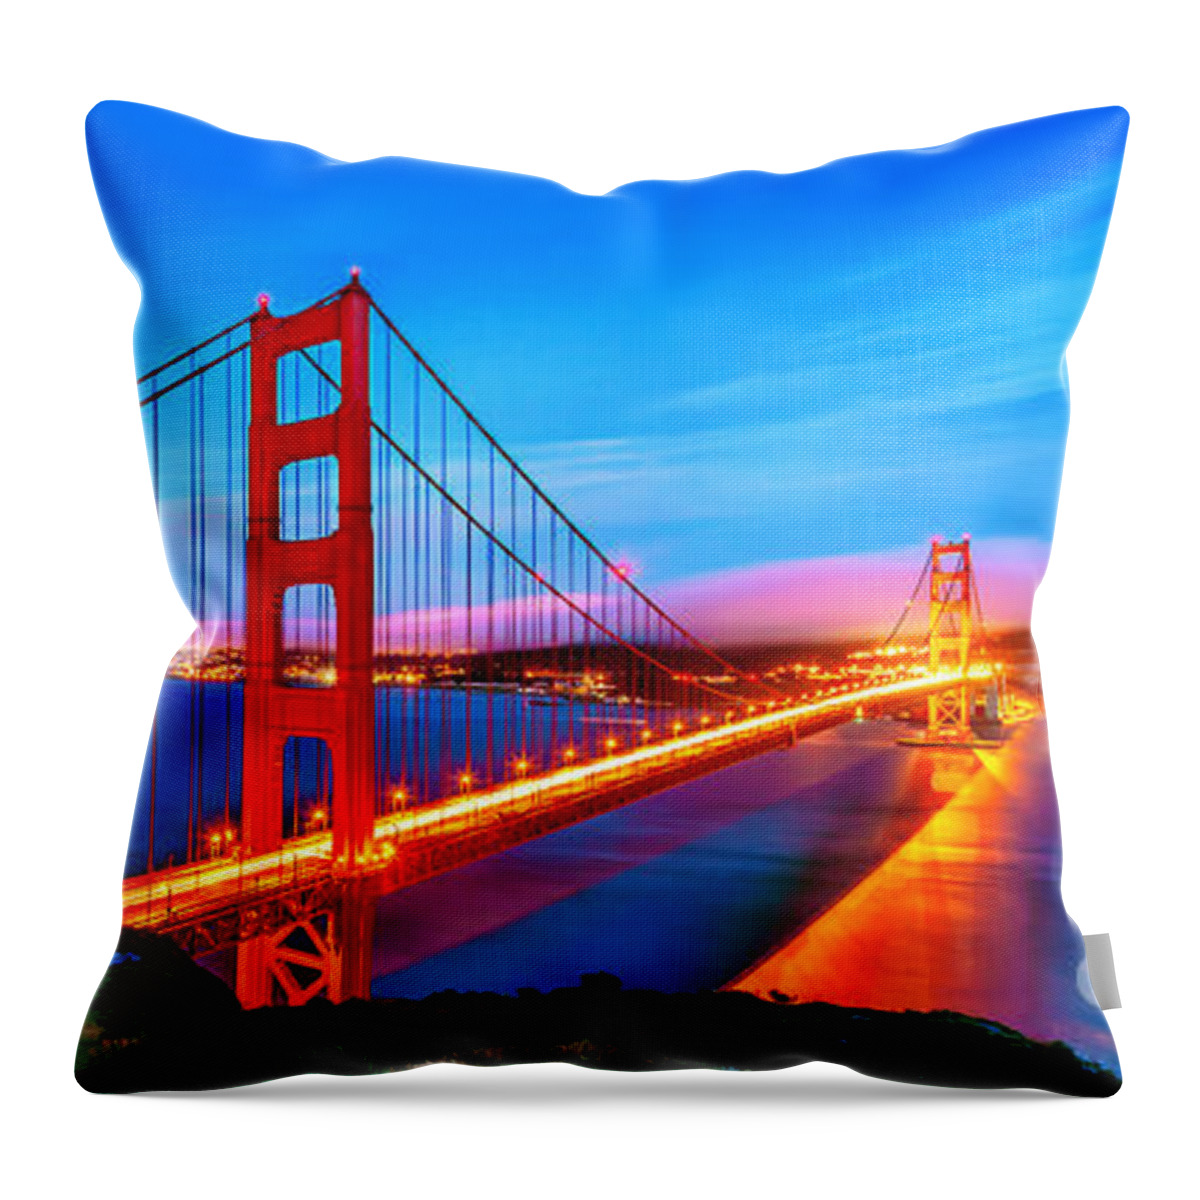 Golden Gate Bridge Throw Pillow featuring the photograph Follow the Golden Trail by Az Jackson